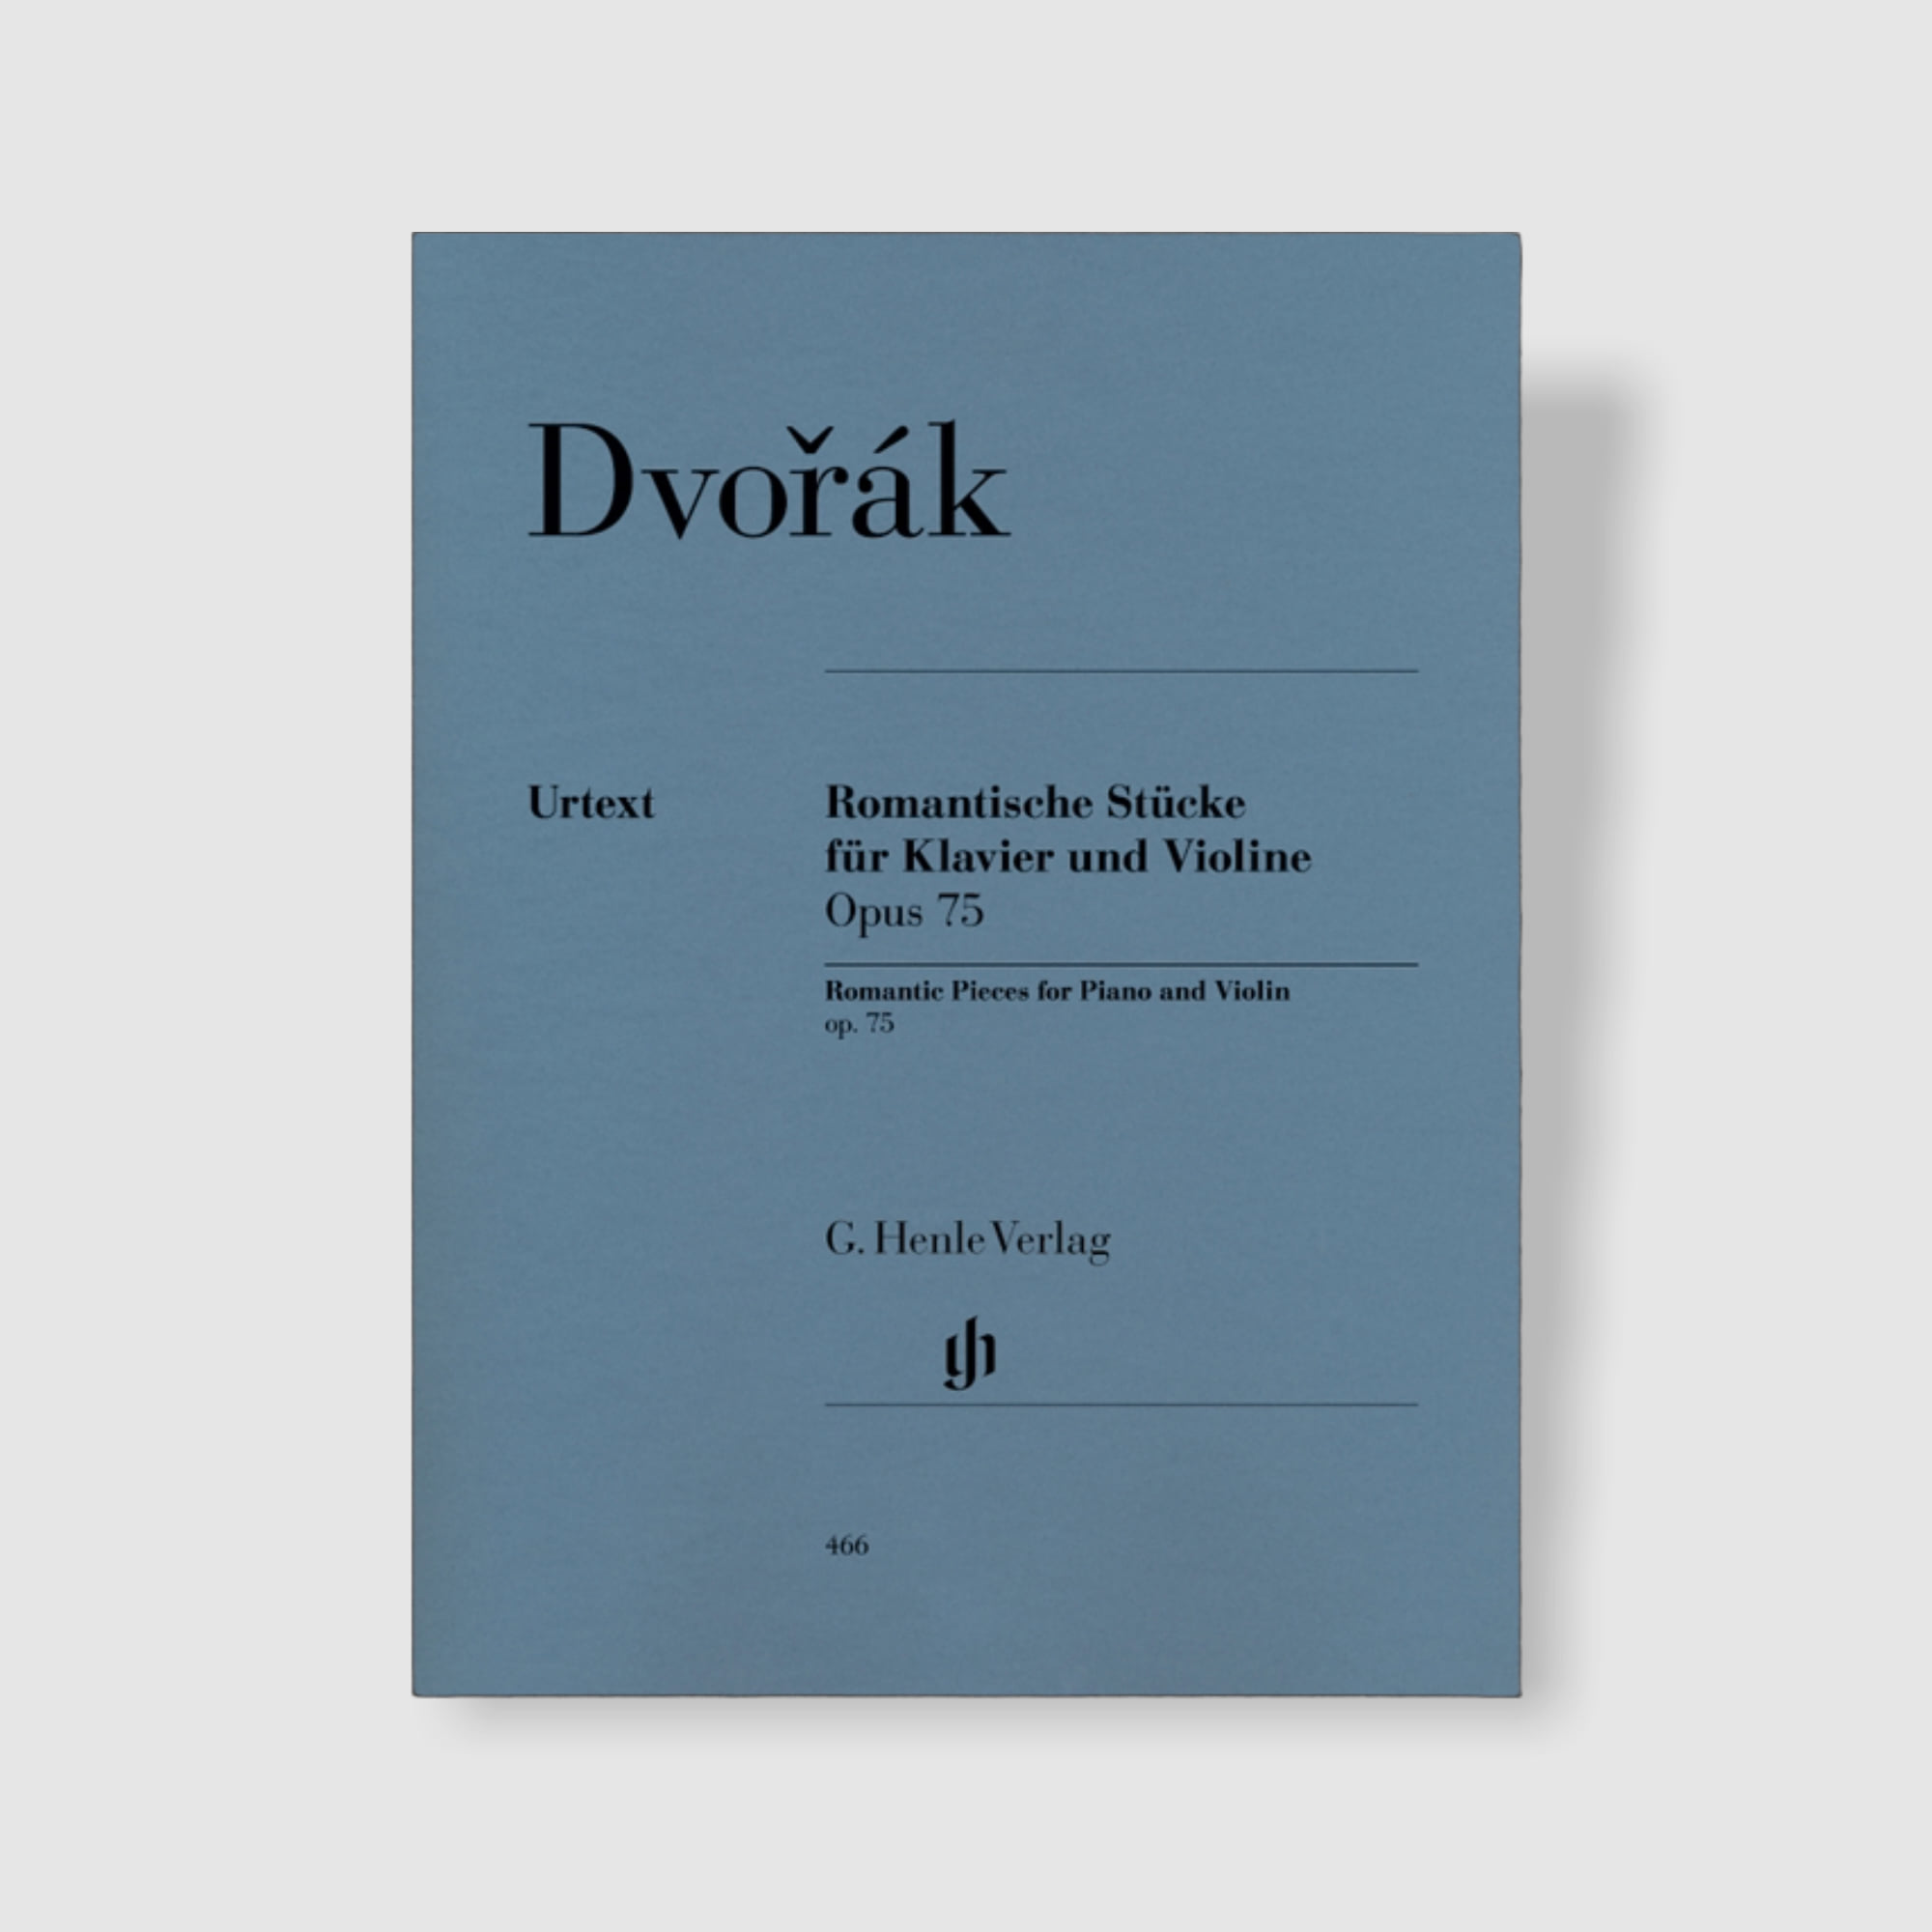 드보르작 바이올린과 피아노를 위한 낭만적인 소품 Op. 75